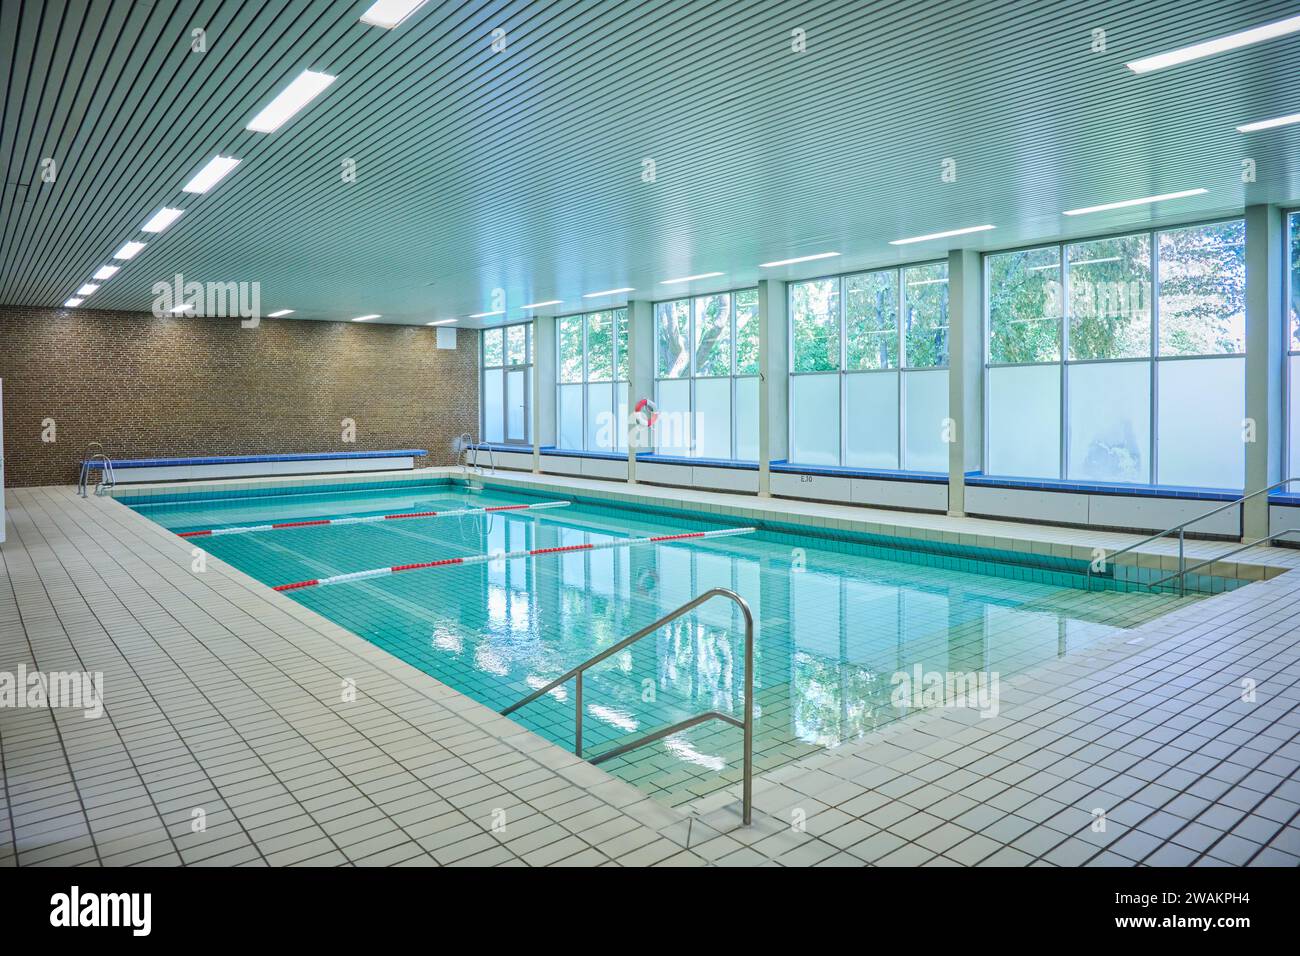 Ein leeres Schwimmbecken in einer Schule Banque D'Images